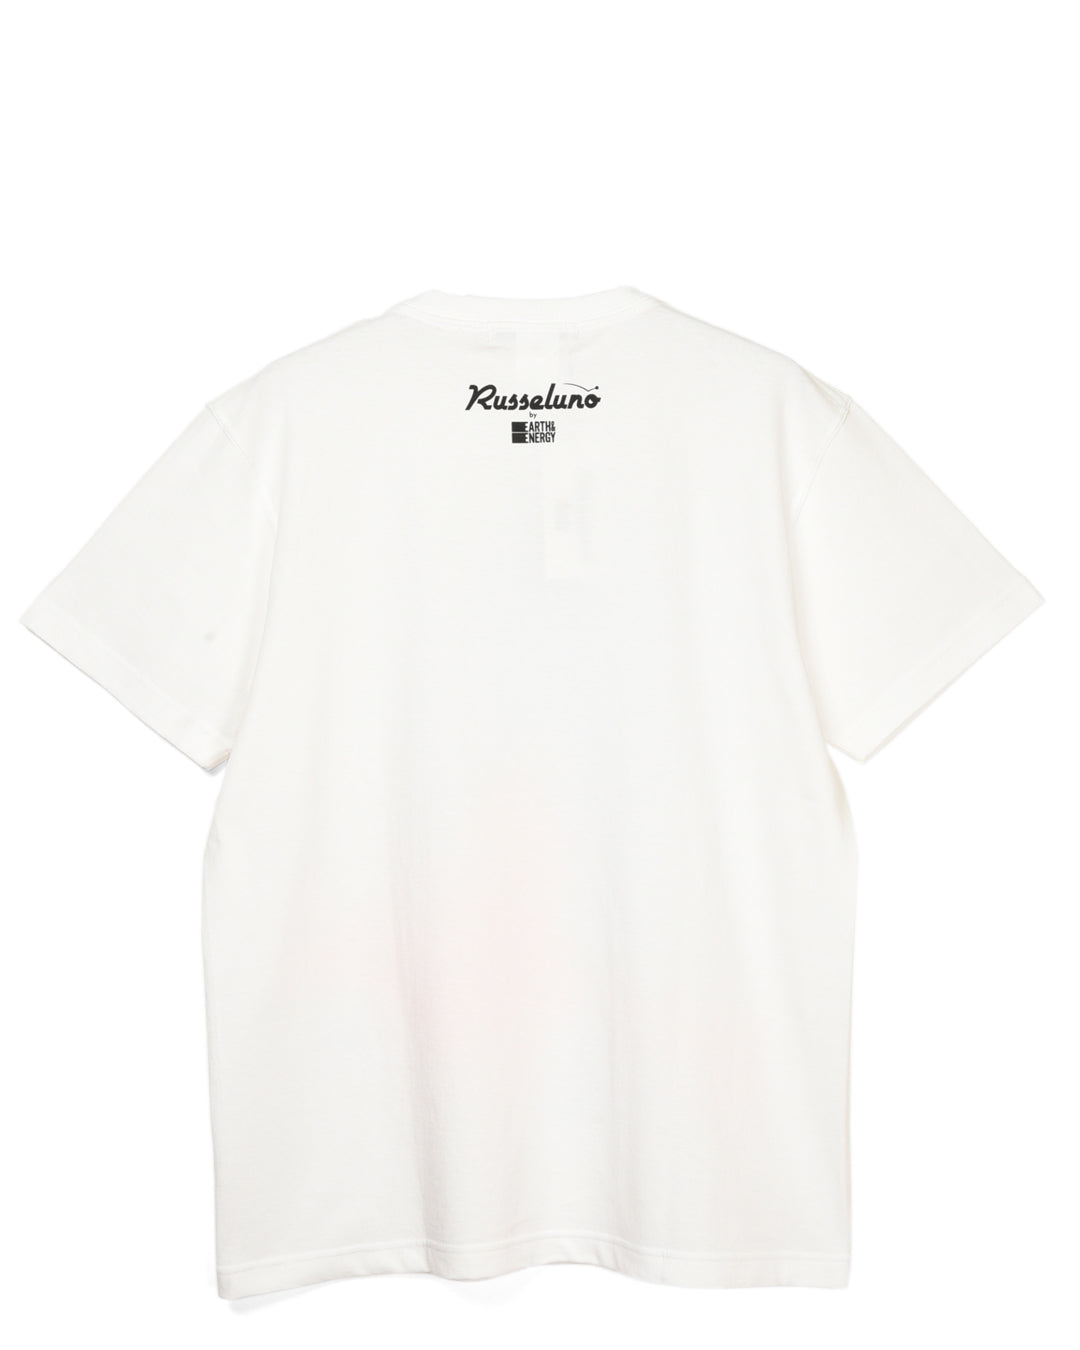 Russeluno by E&amp;E YU-KI NISHIMOTO T-shirt